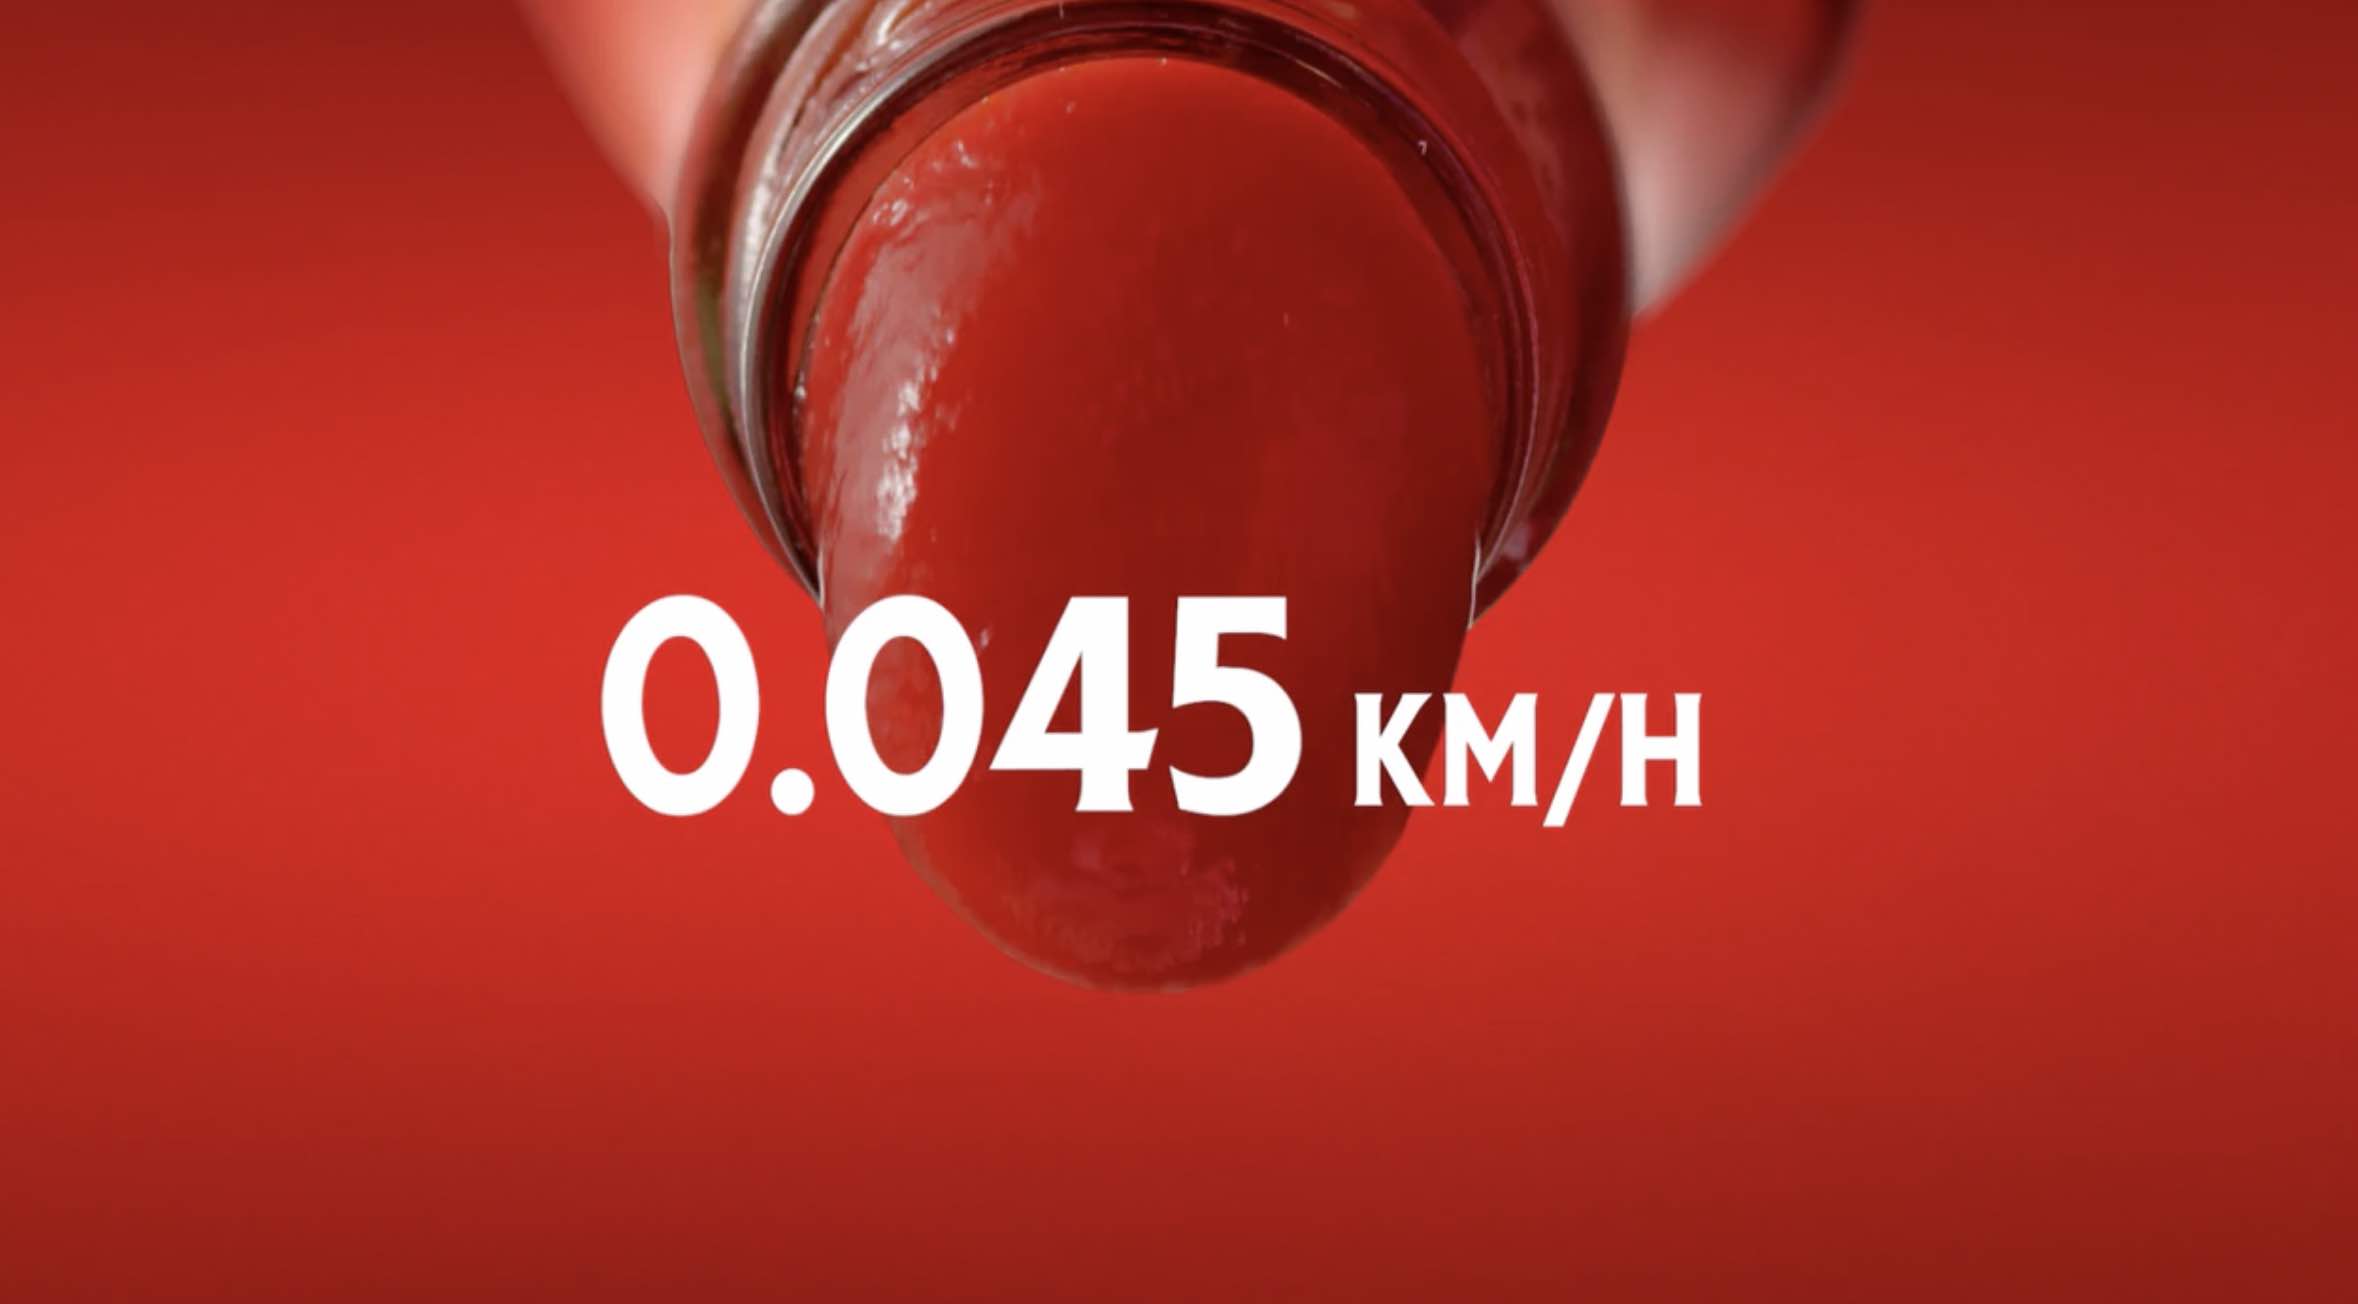 Heinz beloont automobilisten die met ketchupsnelheid rijden (Focalys)